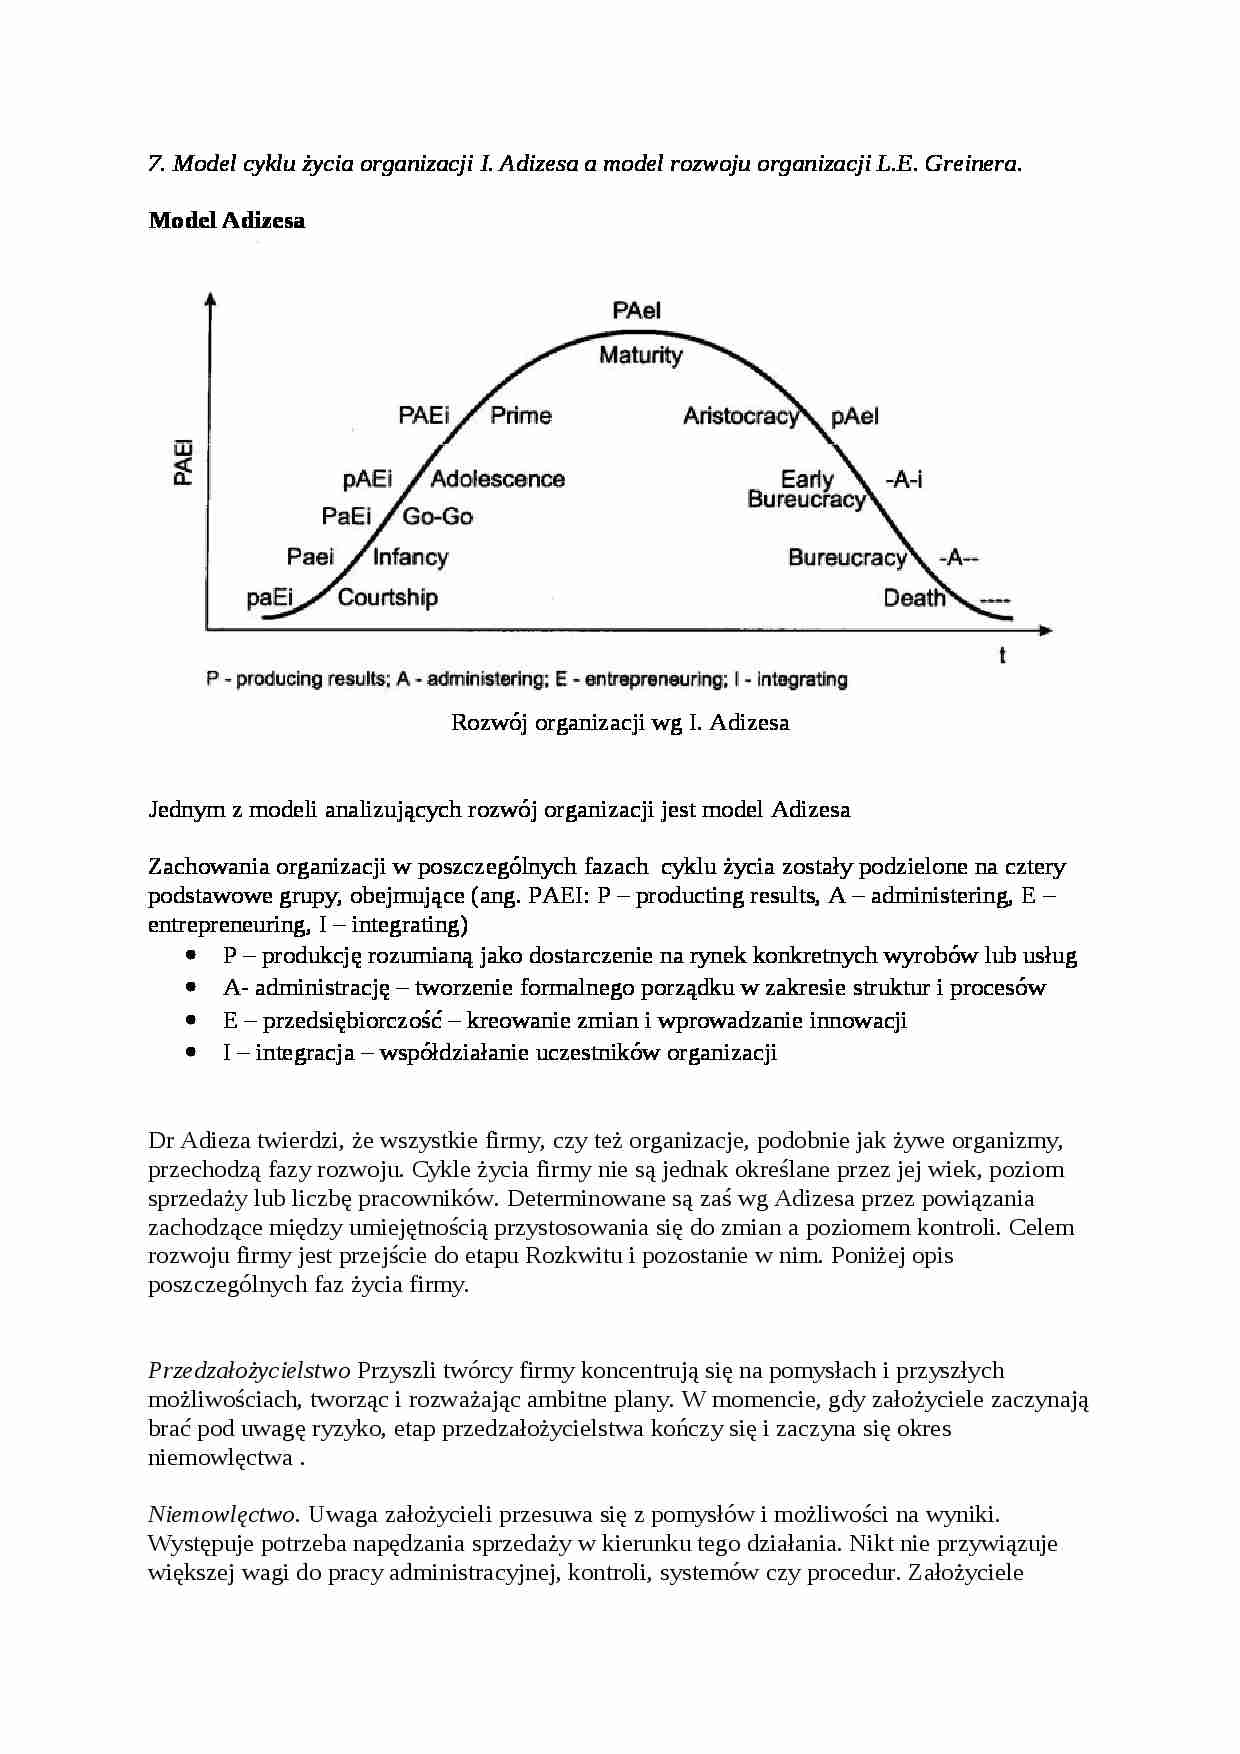 Historyczna ewolucja struktur organizacyjnych a dynamika otoczenia - strona 1